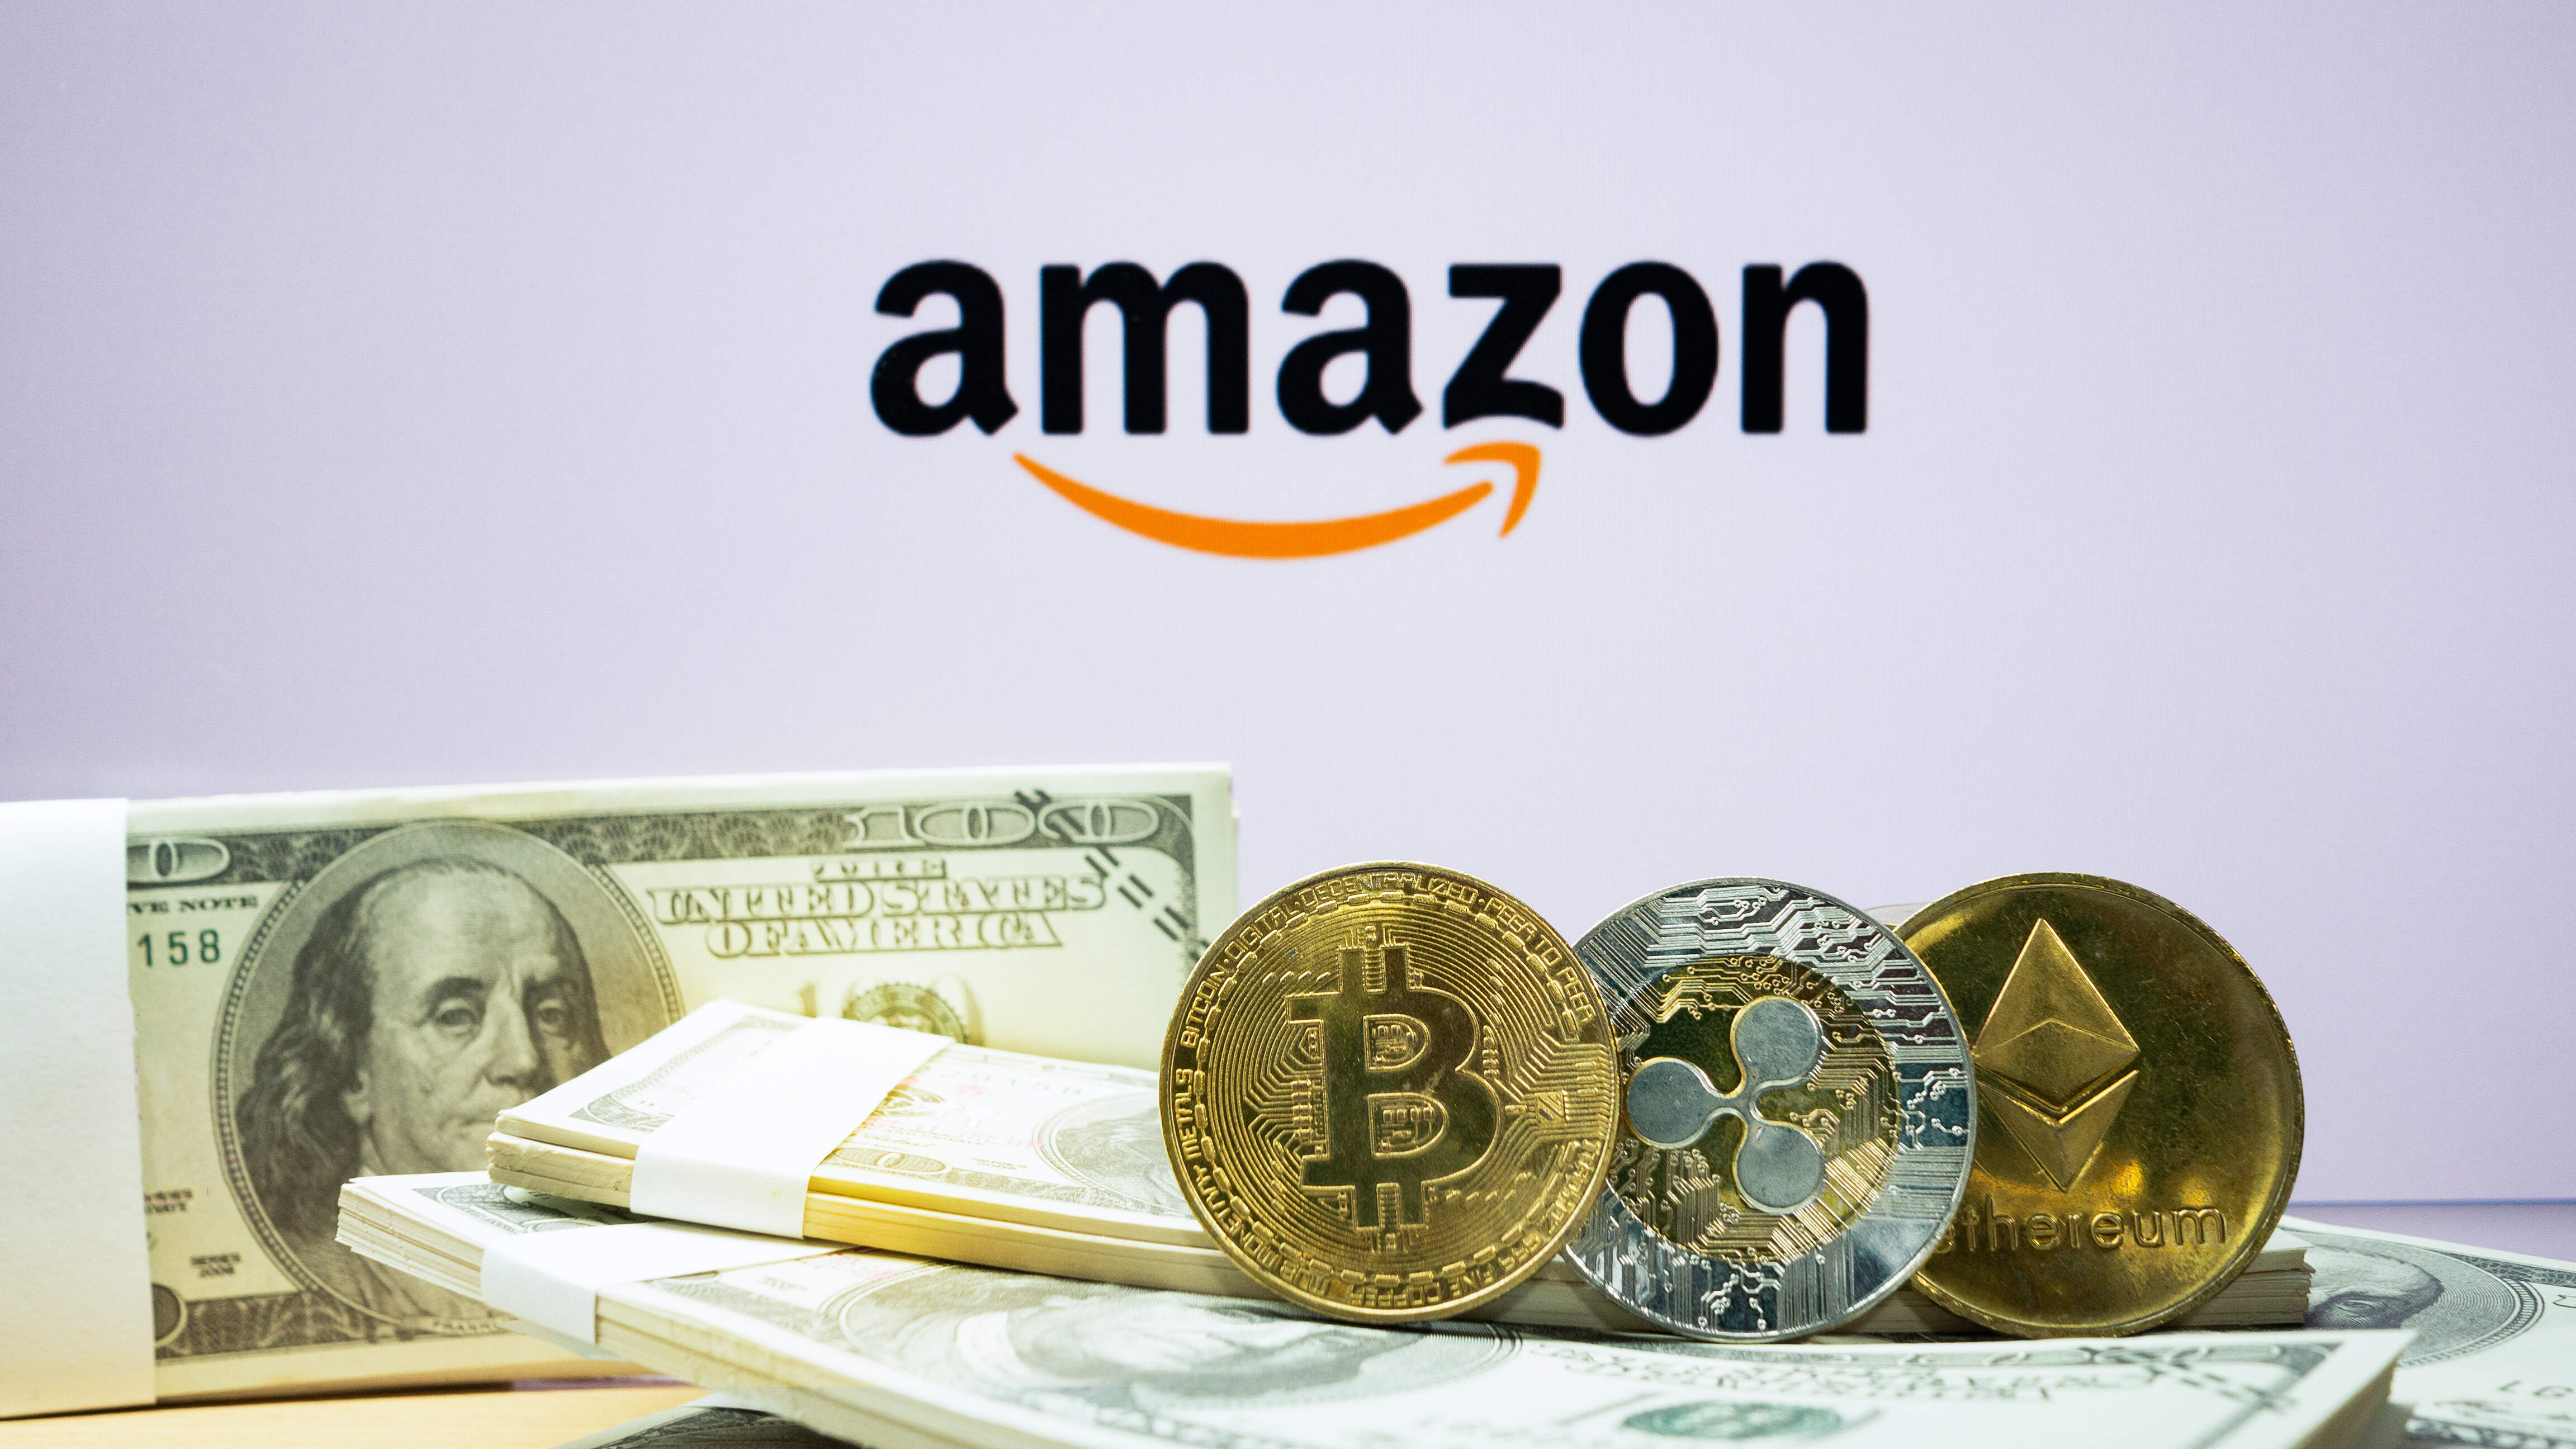 Prebudil sa Bitcoin po korekcii, alebo bude v korekcii ešte pokračovať? Bude Amazon akceptovať platby v Bitcoinoch?